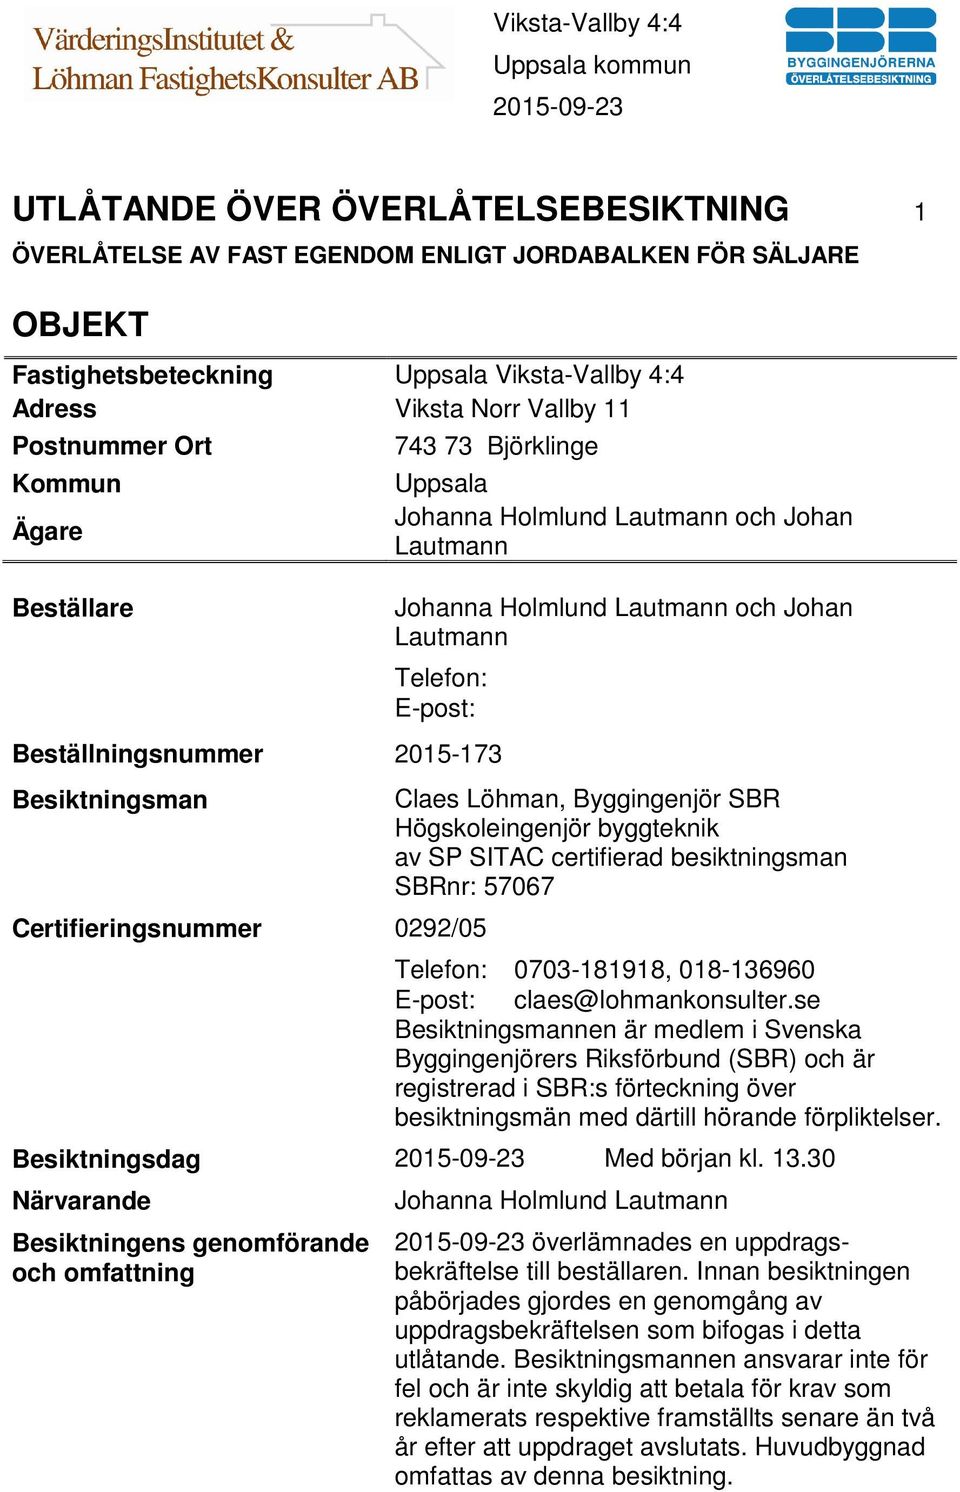 Certifieringsnummer 0292/05 Claes Löhman, Byggingenjör SBR Högskoleingenjör byggteknik av SP SITAC certifierad besiktningsman SBRnr: 57067 Telefon: 0703-181918, 018-136960 E-post: